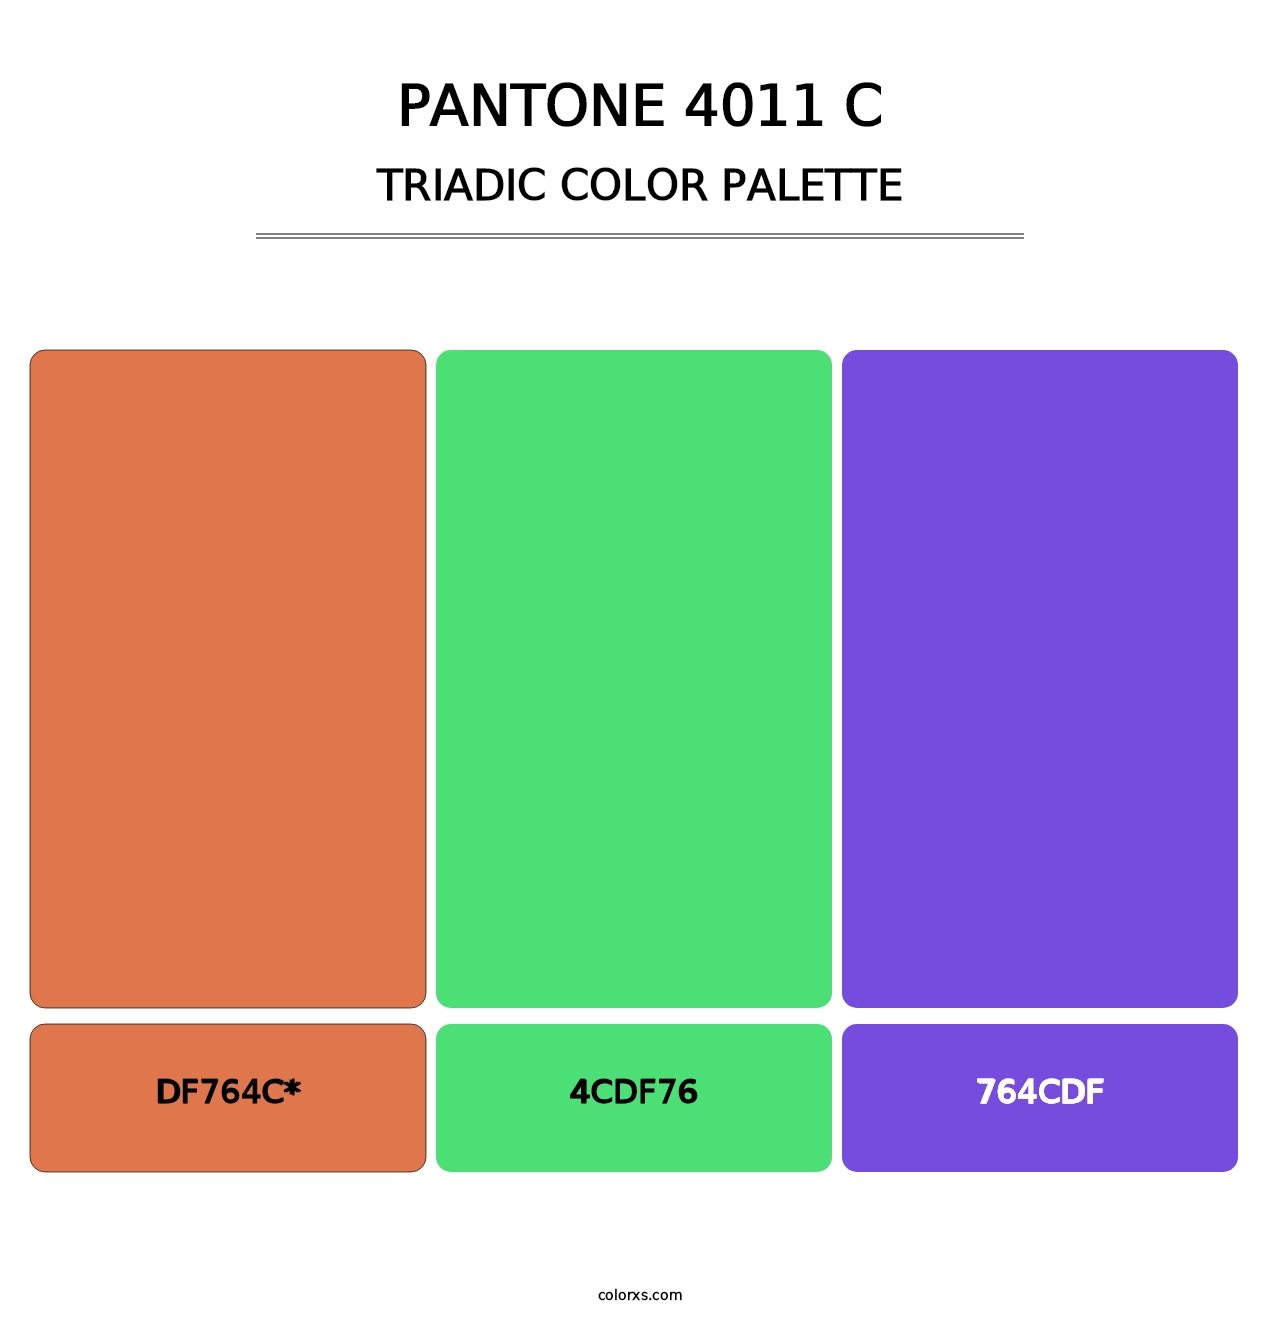 PANTONE 4011 C - Triadic Color Palette